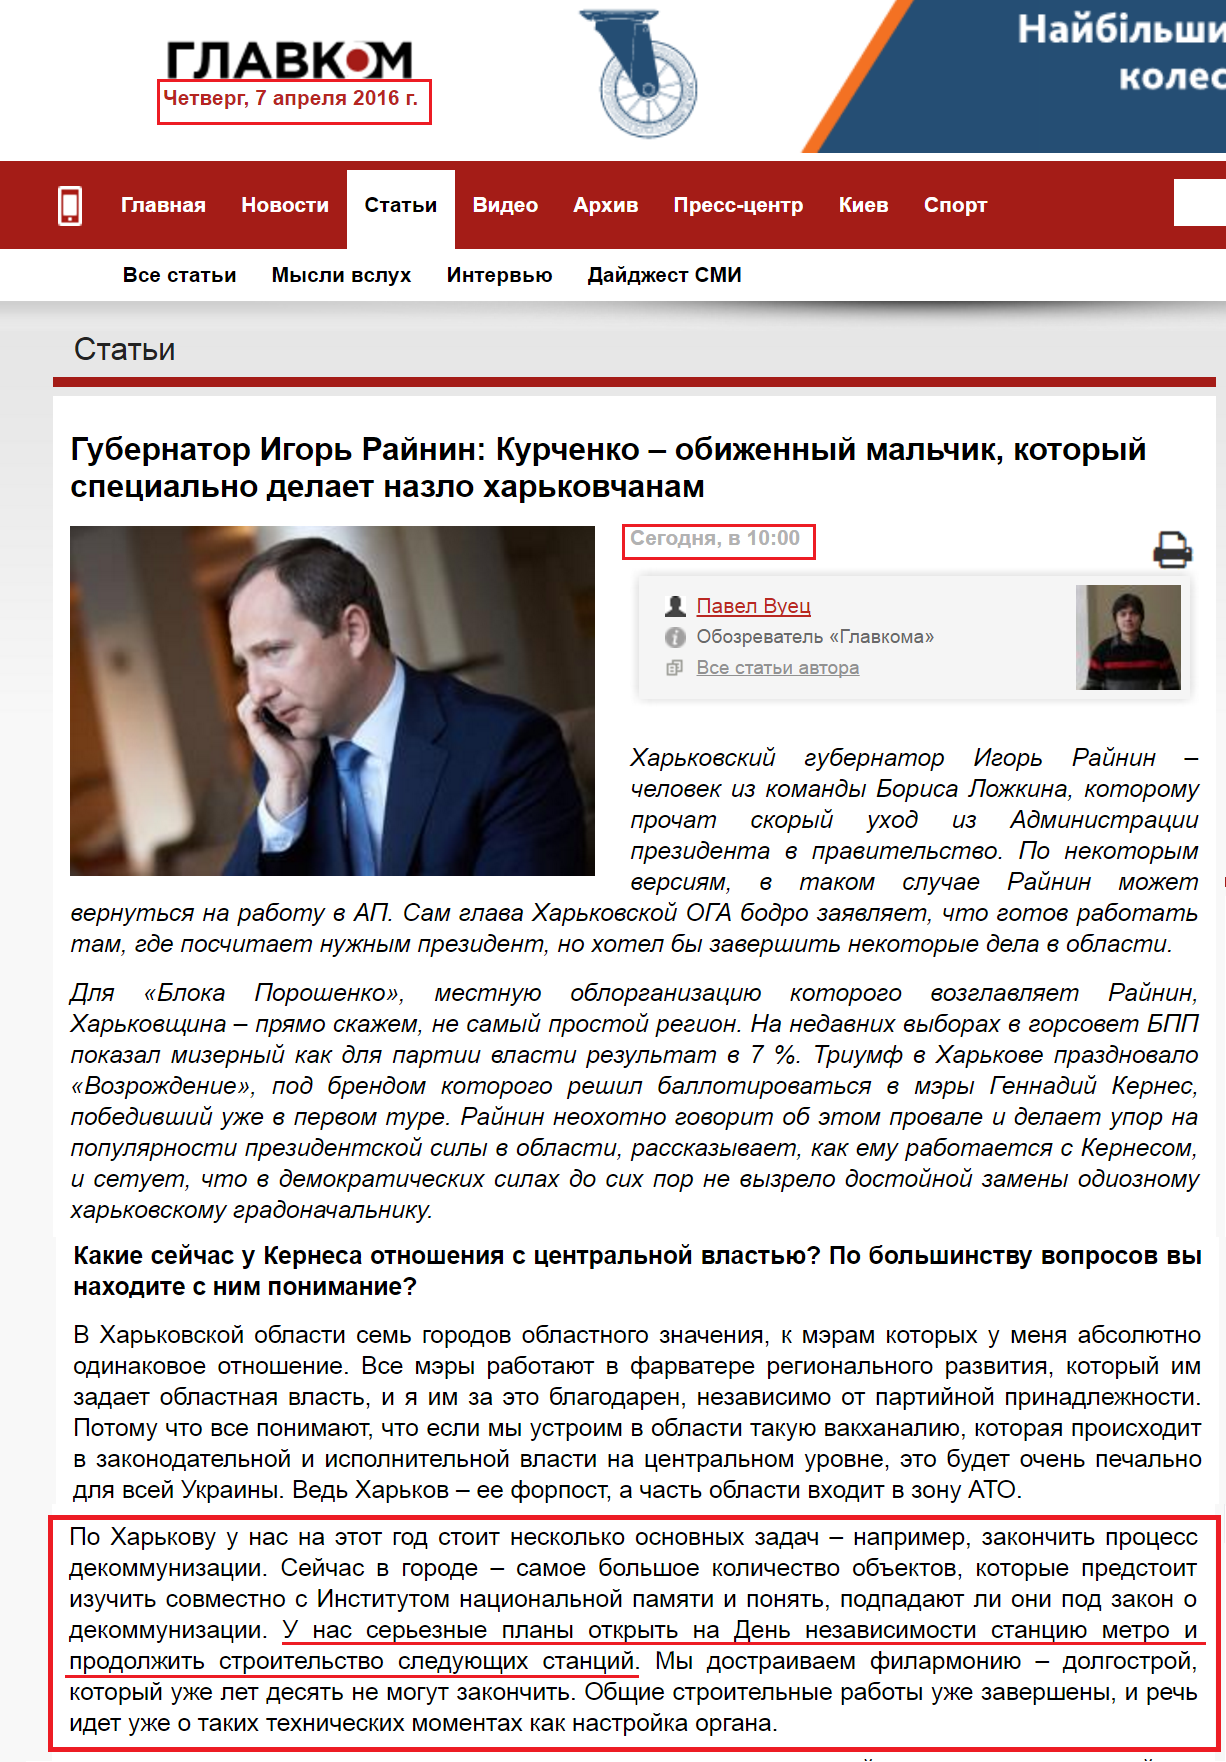 http://glavcom.ua/articles/40028.html